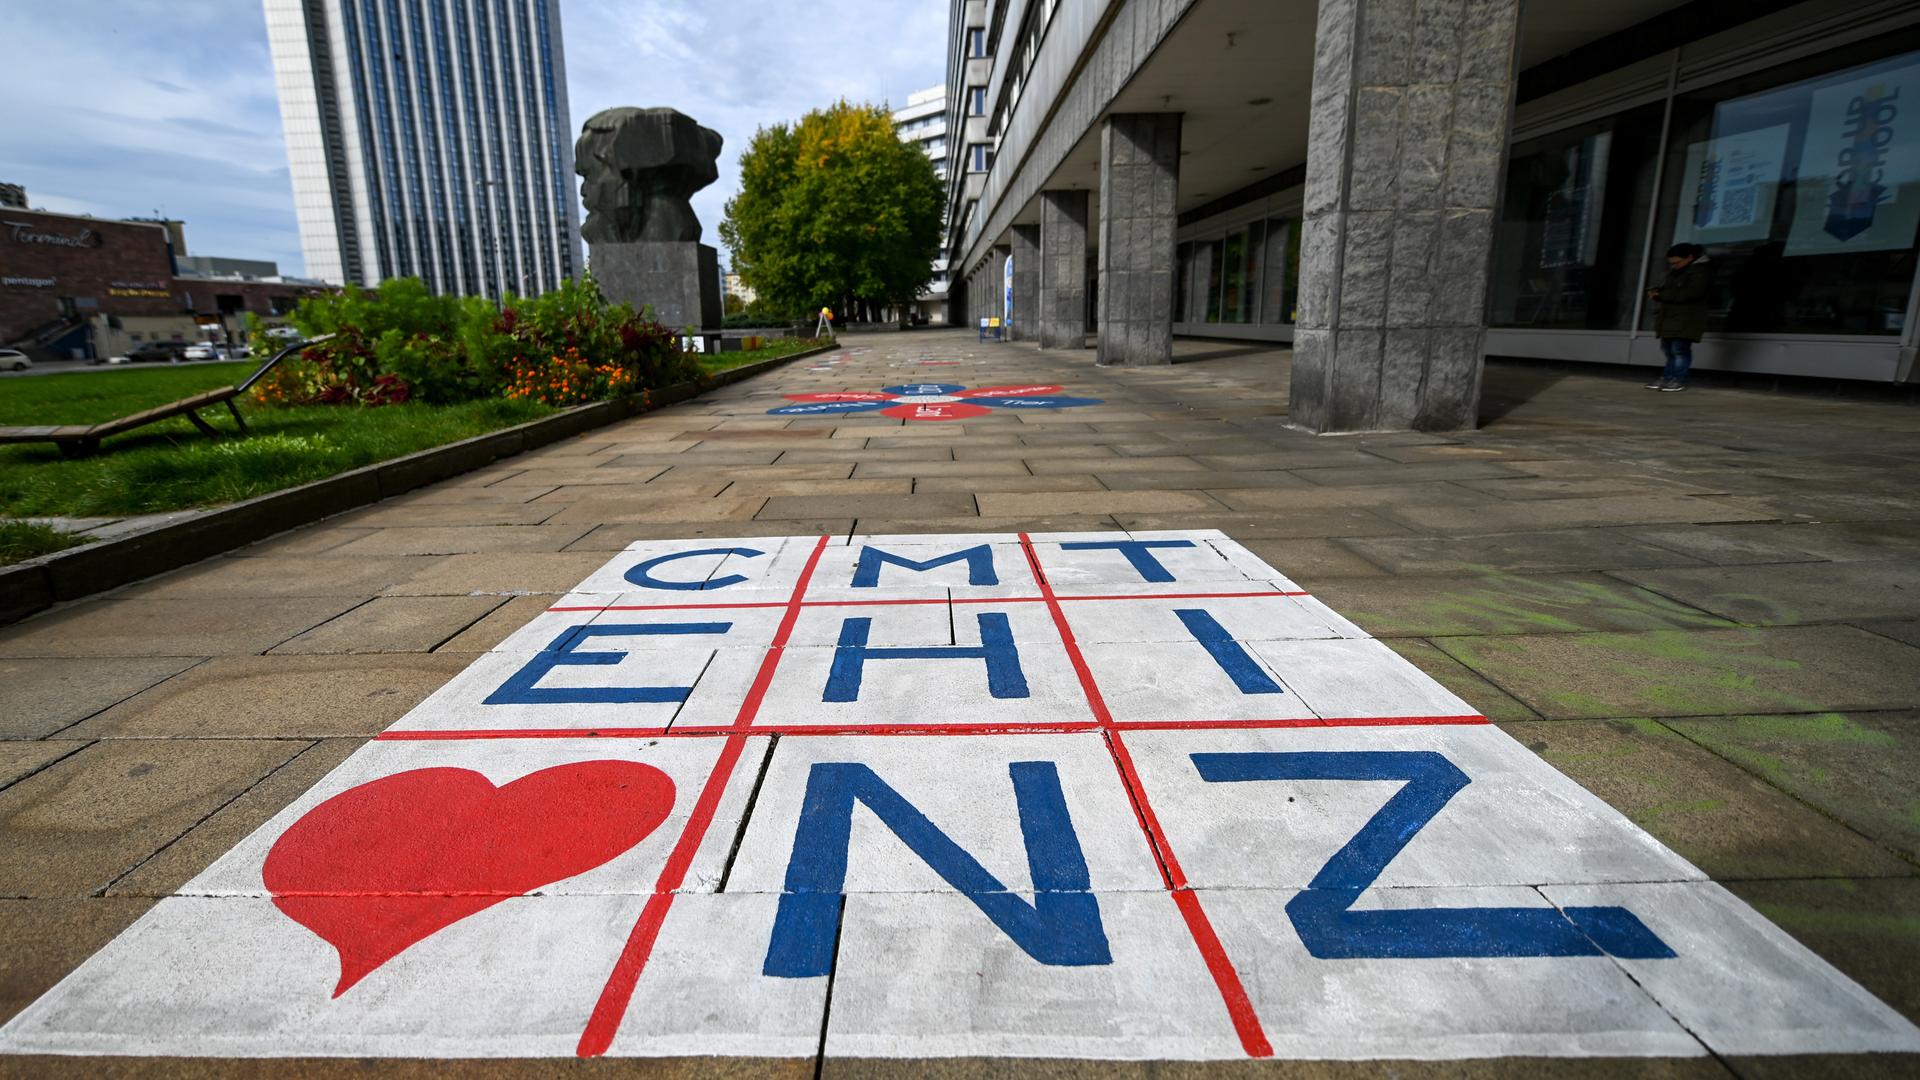 Die Buchstaben für Chemnitz stehen in einer Matrix auf dem Fußweg hinter dem Karl-Marx-Monument.